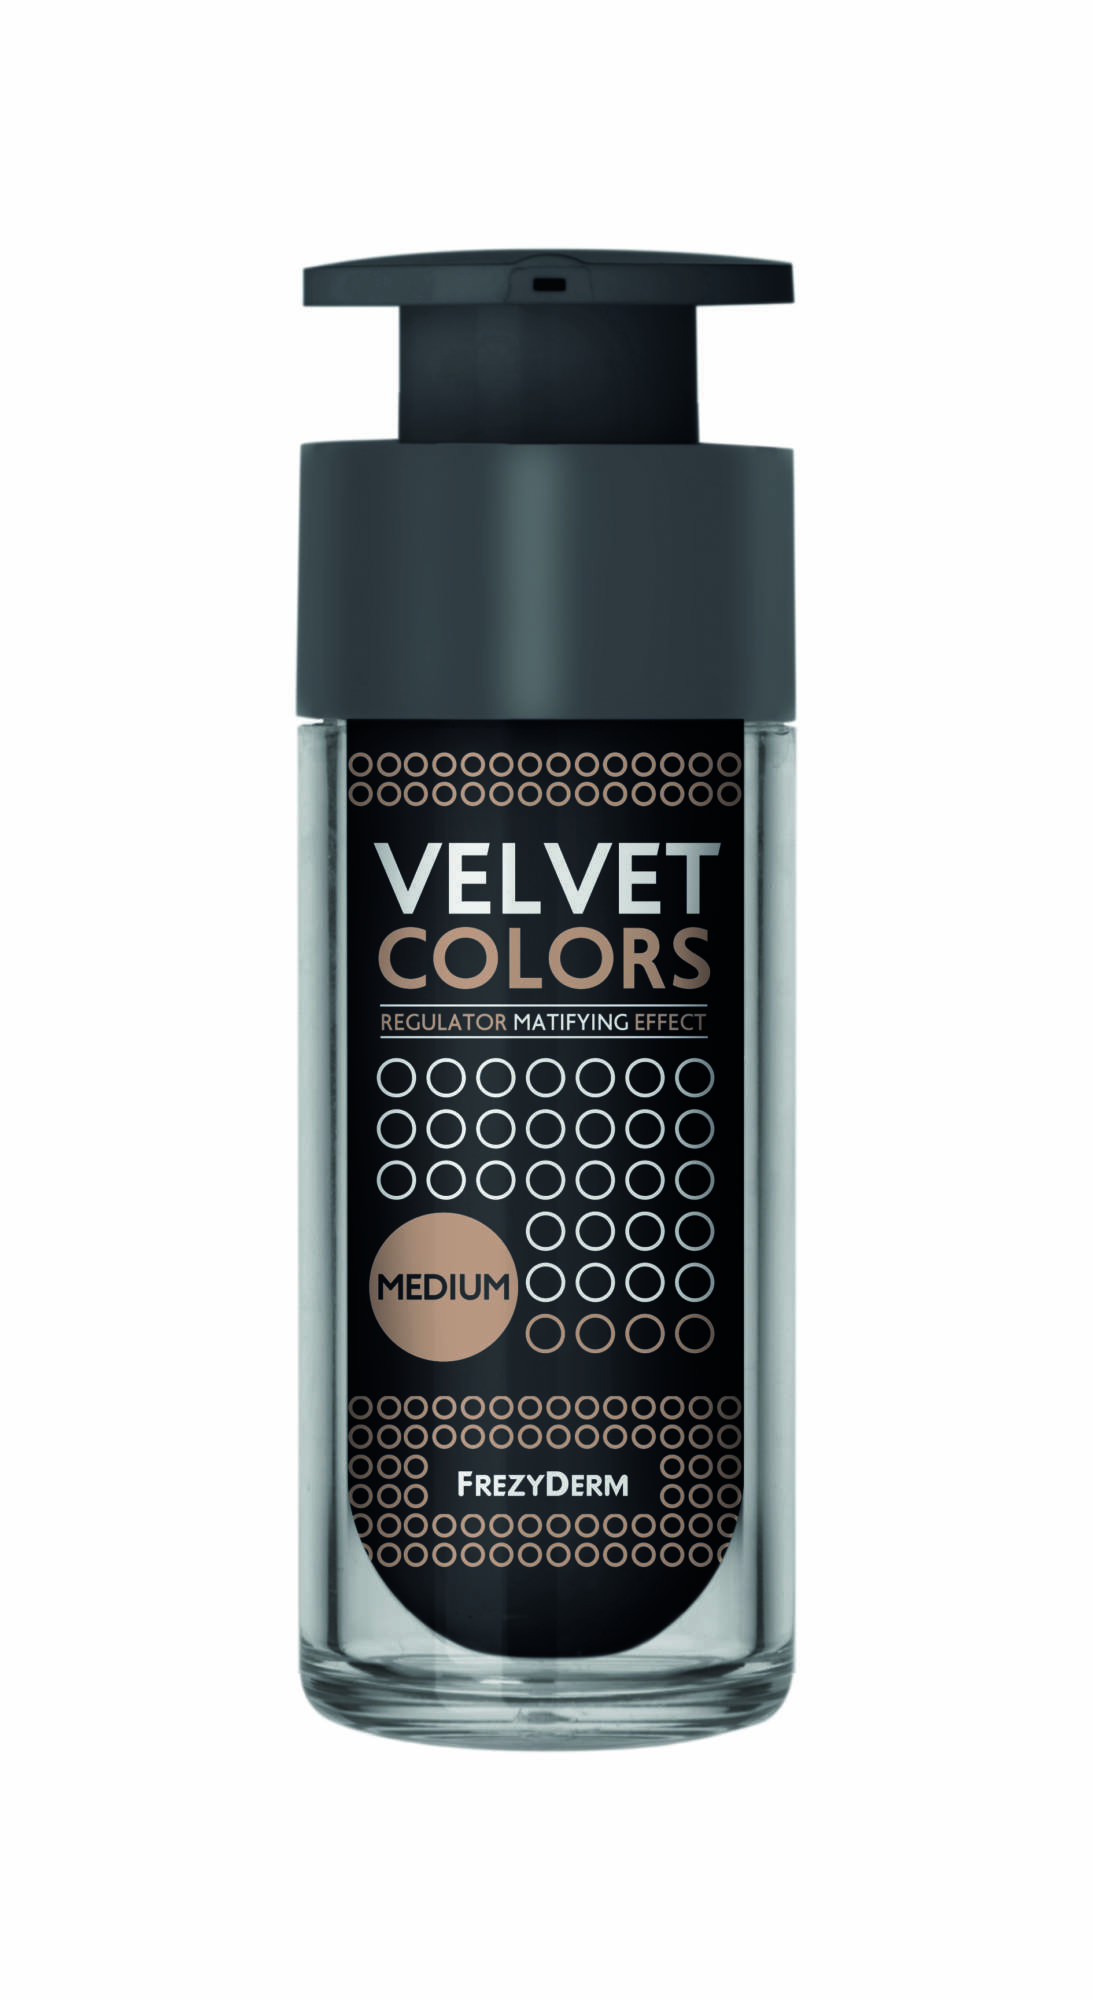 Velvet Colors Medium 3